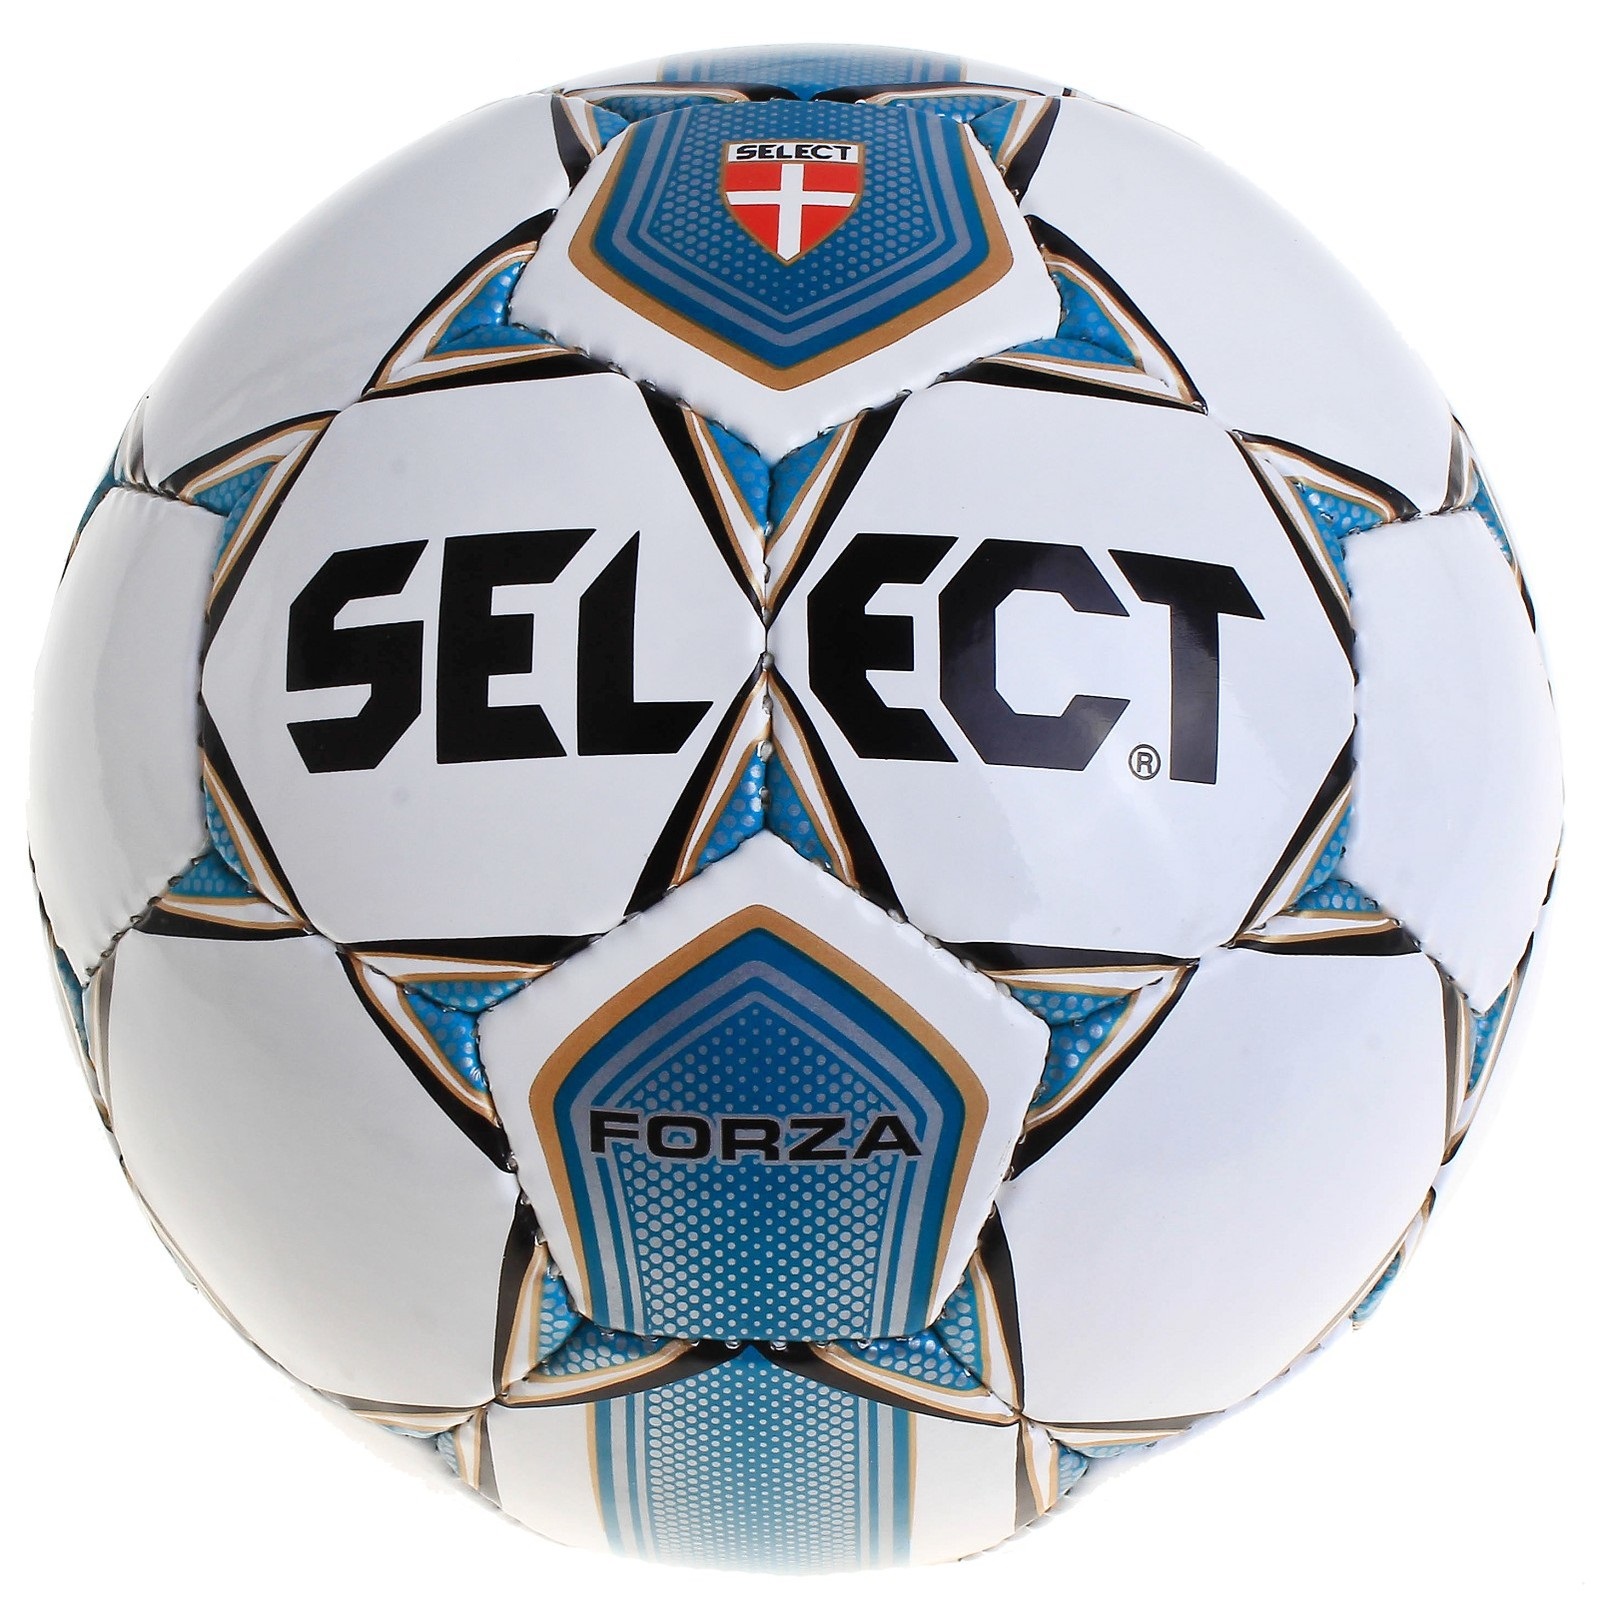 Футбольный мяч select. Мяч футбольный Селект 5. Футбольные мячи Селект размер 4. Мяч футбольный 4 select Forza. Футболный мяч Селекта мяч.